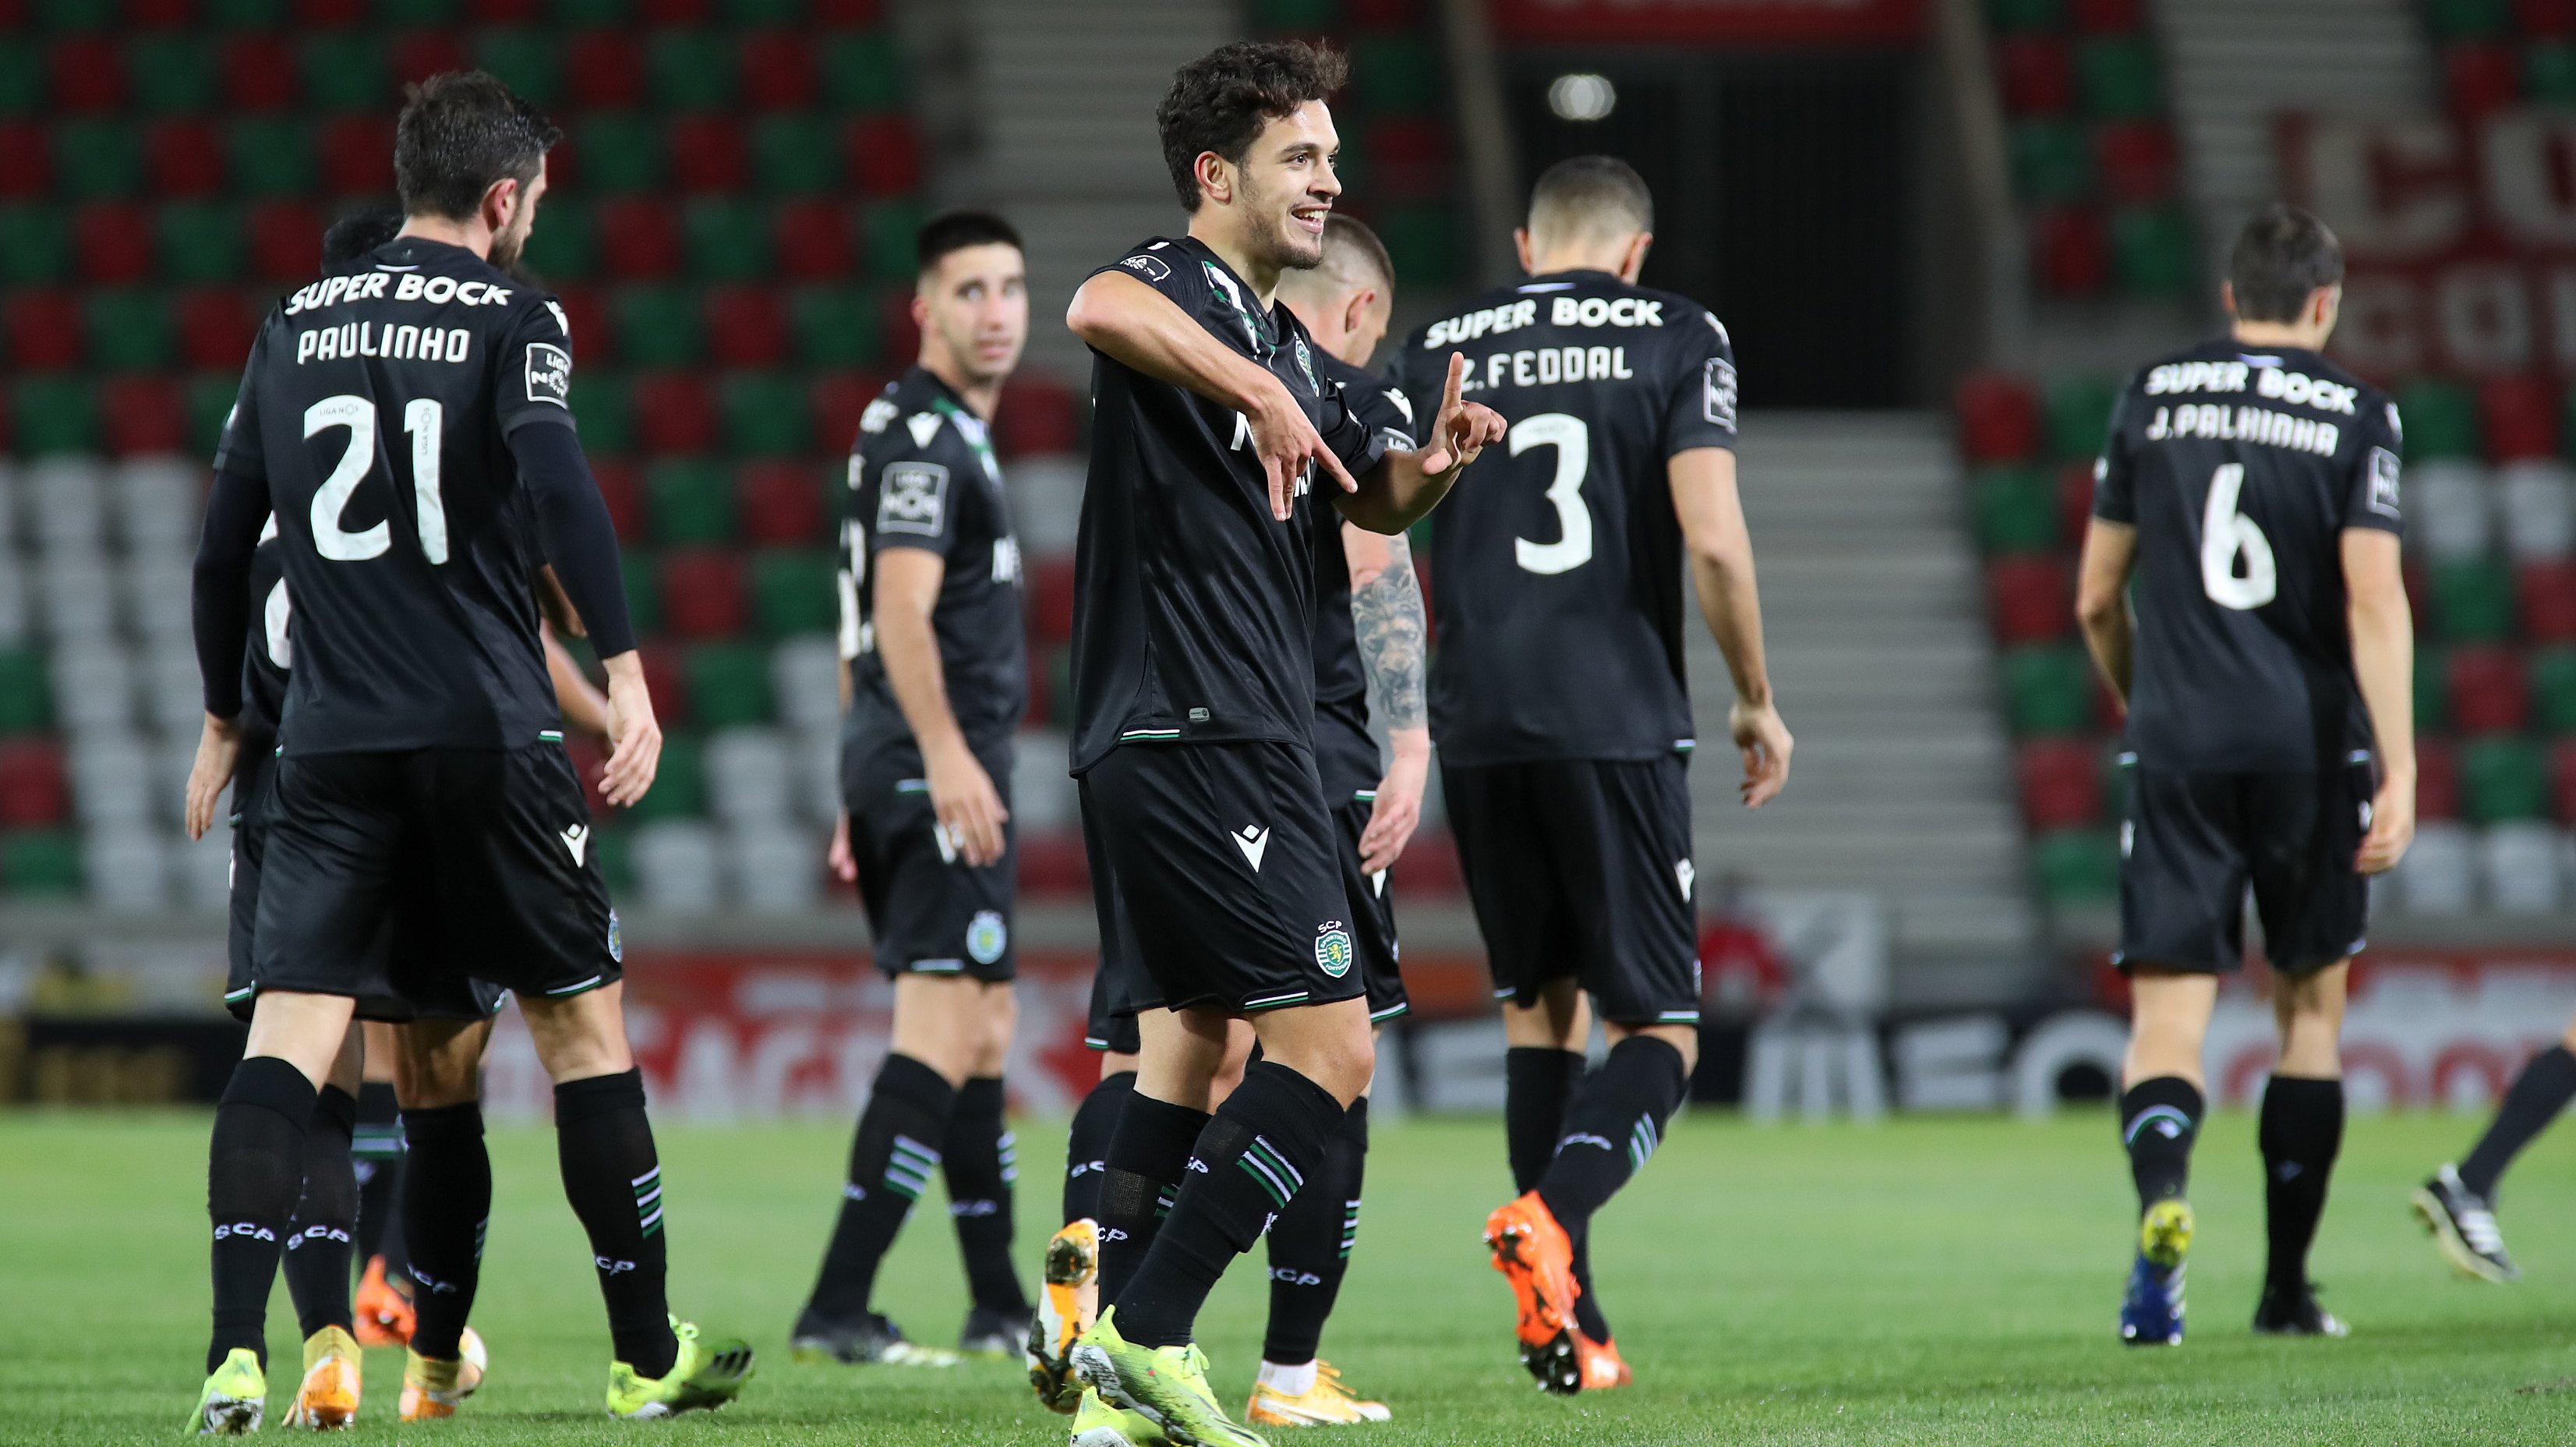 O avançado português voltou aos golos depois de três jogos consecutivos sem marcar